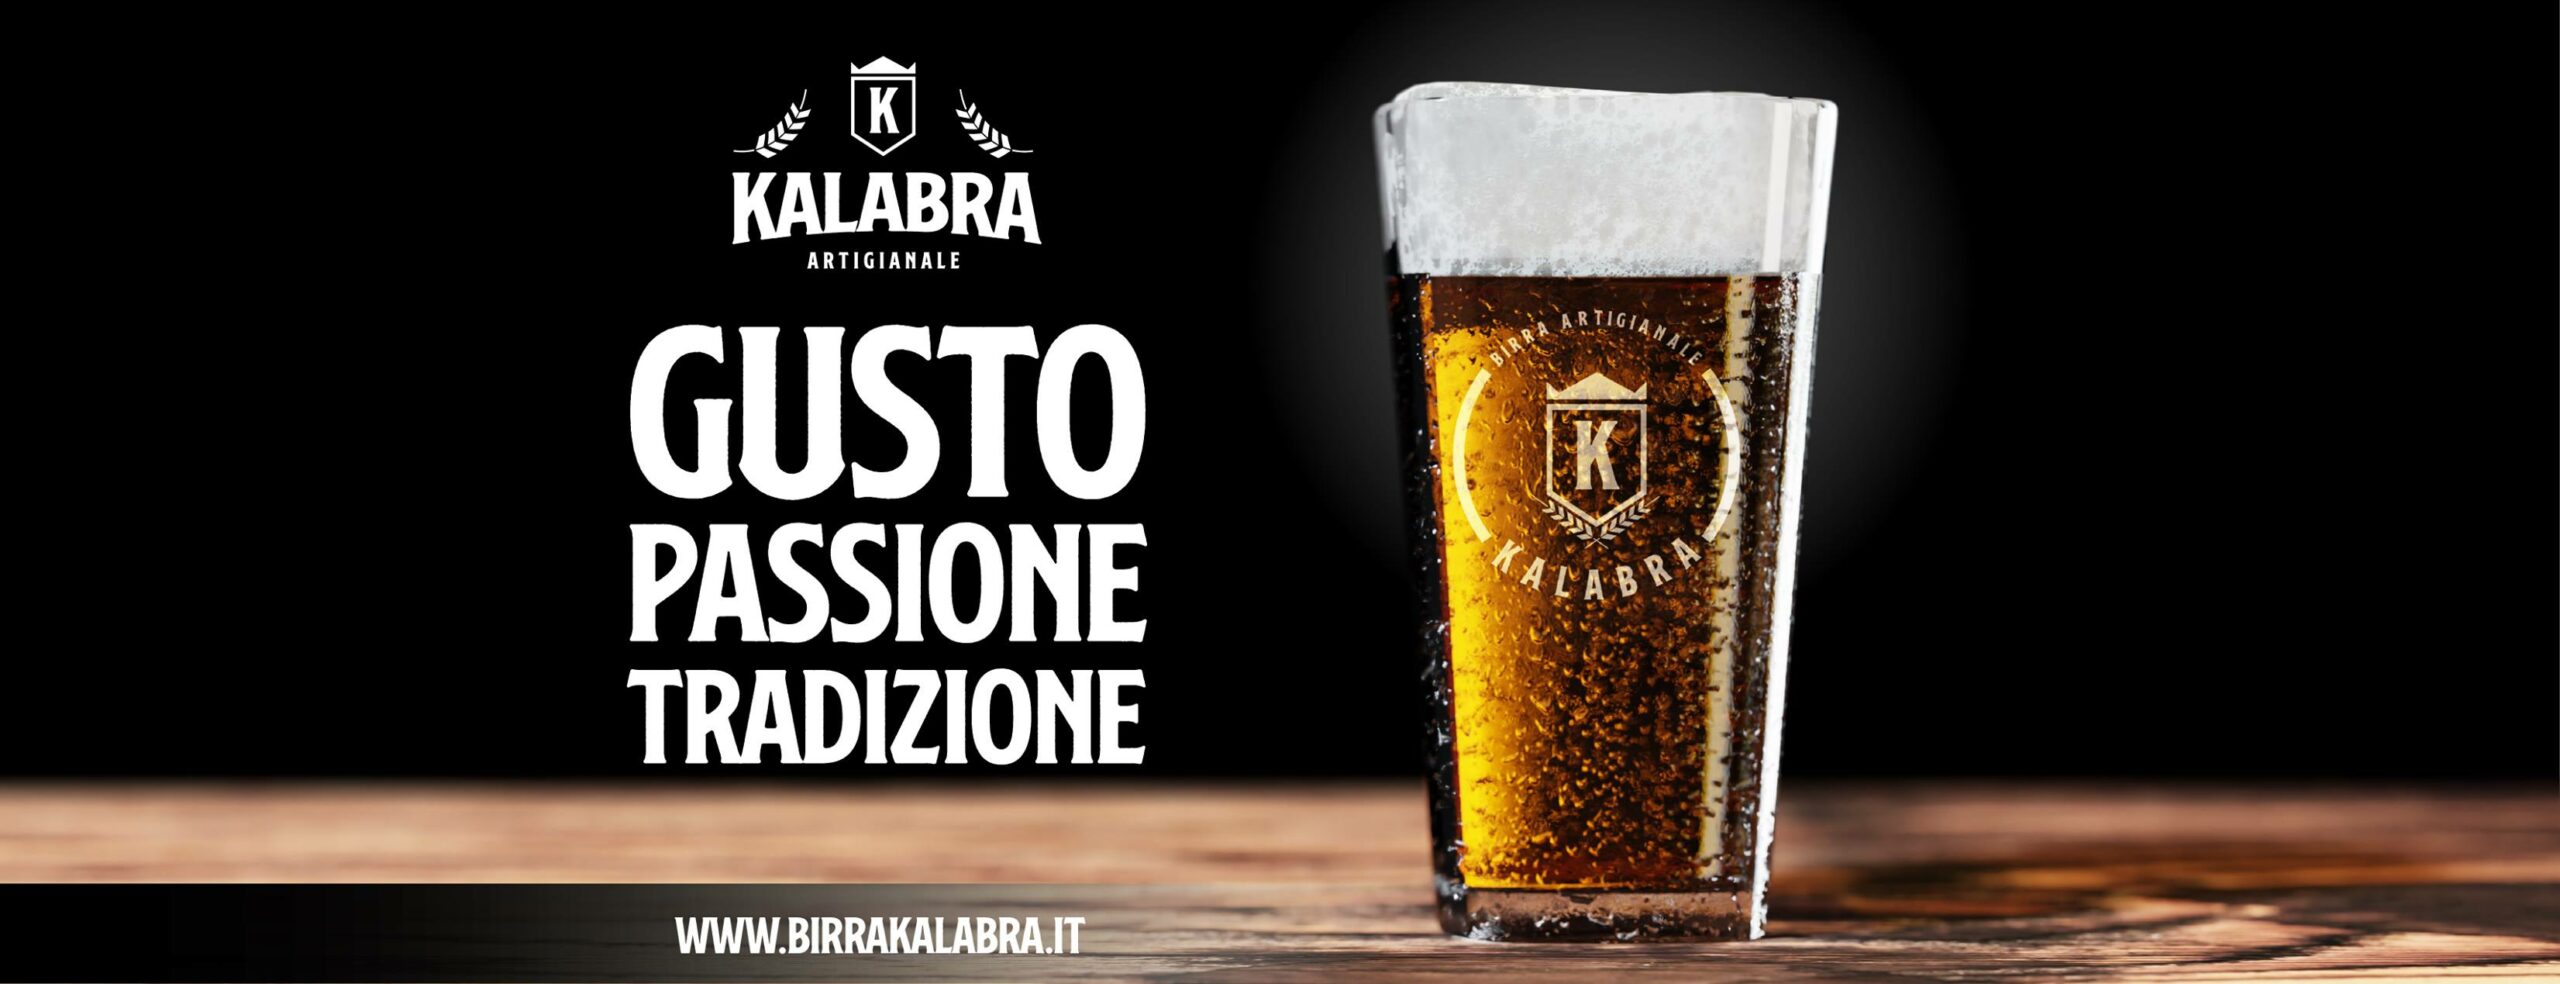 Birrificio Kalabra: da beerfirm a birrificio, espressione d’eccellenza di Calabria!